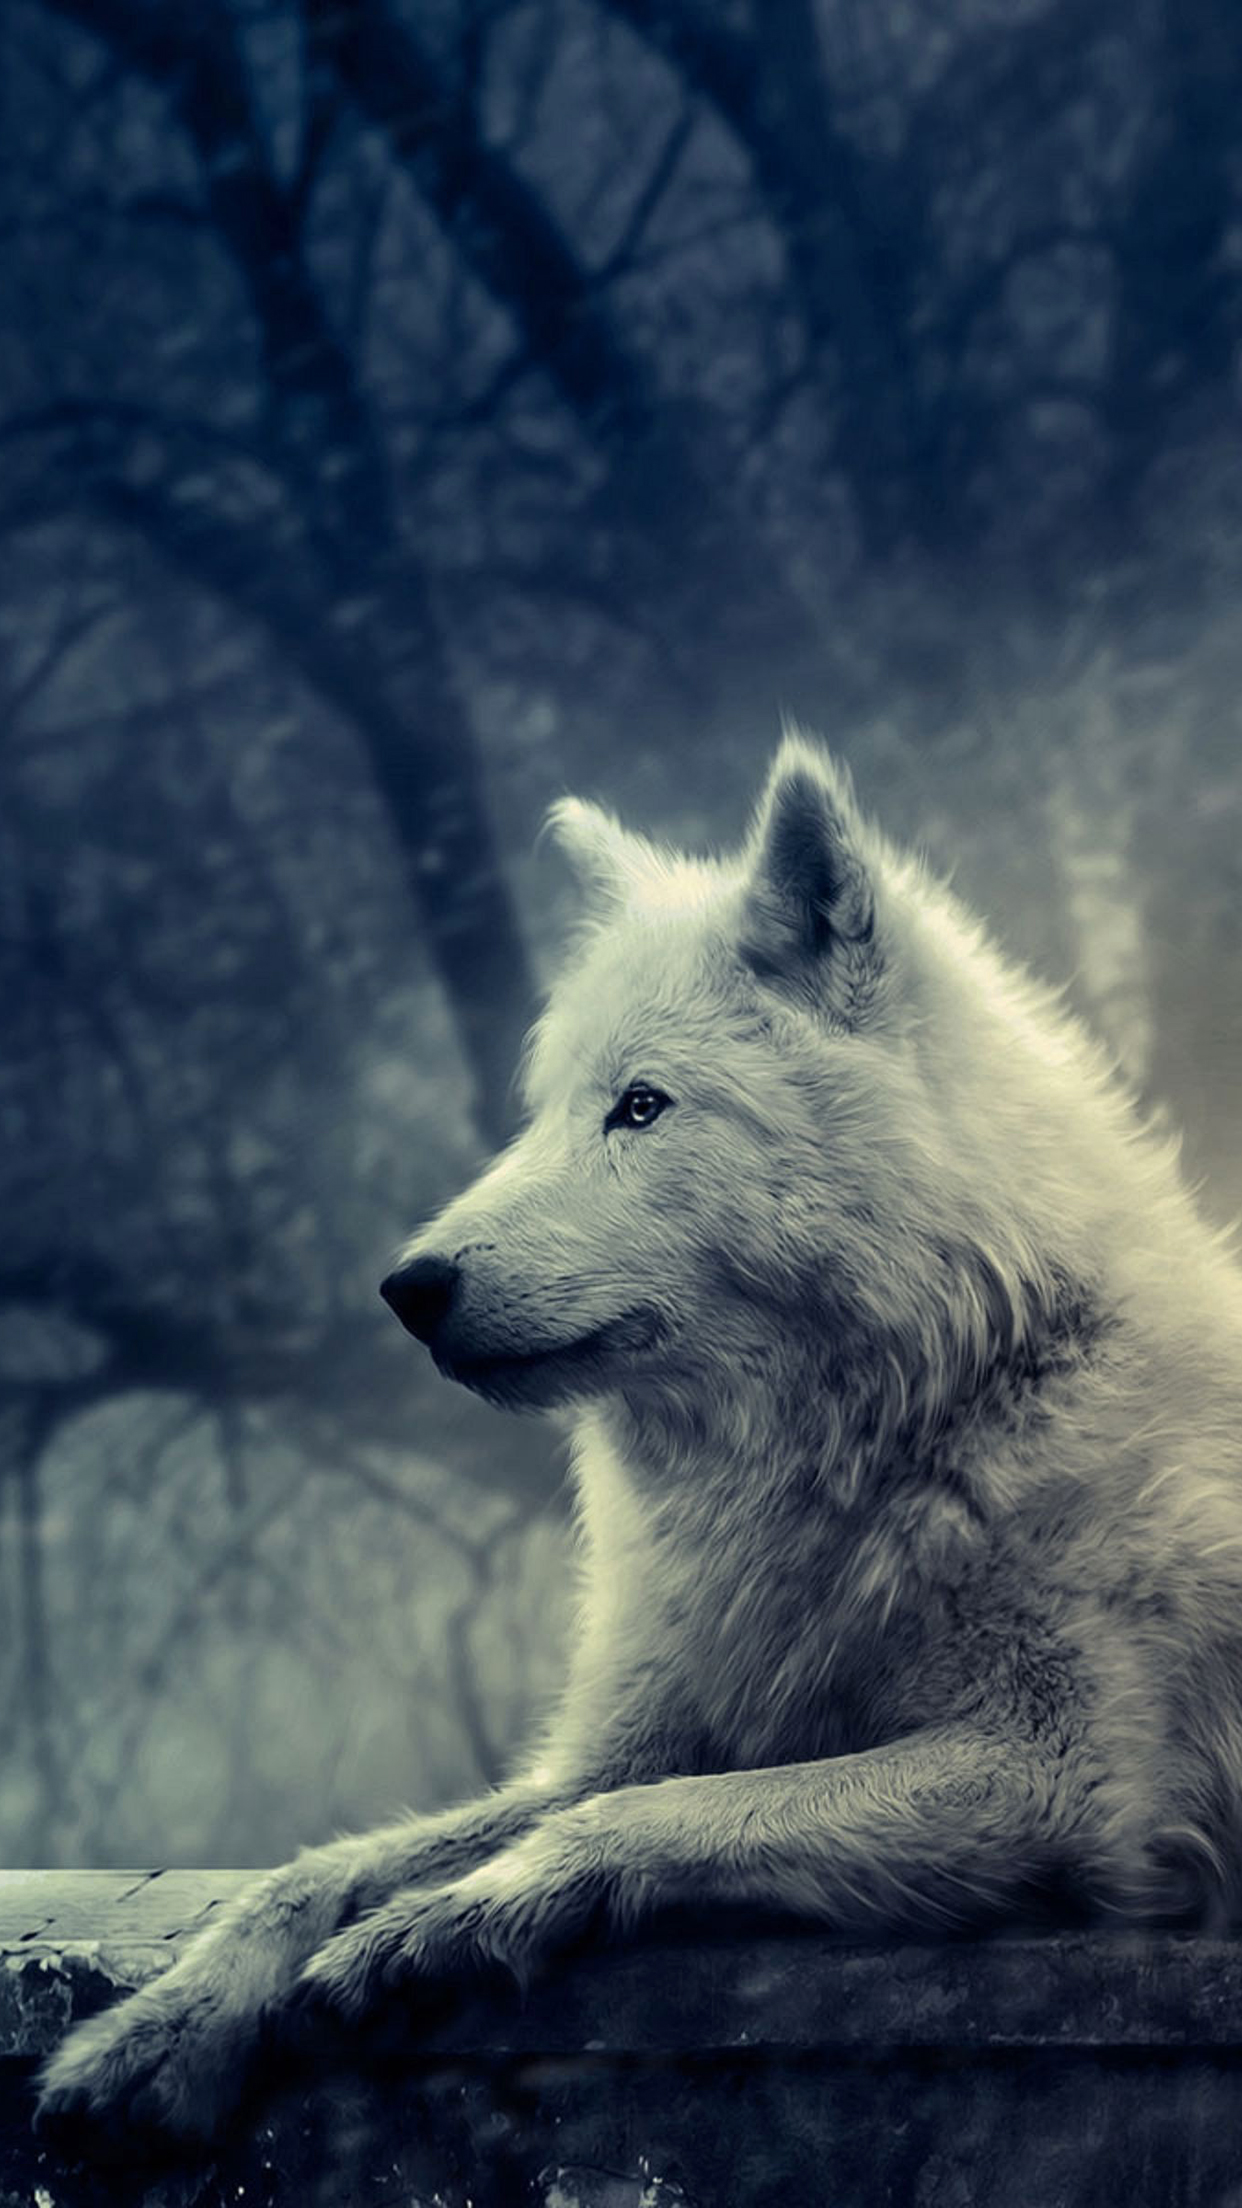 papier peint loup blanc,canis lupus tundrarum,le renard arctique,faune,loup,ciel